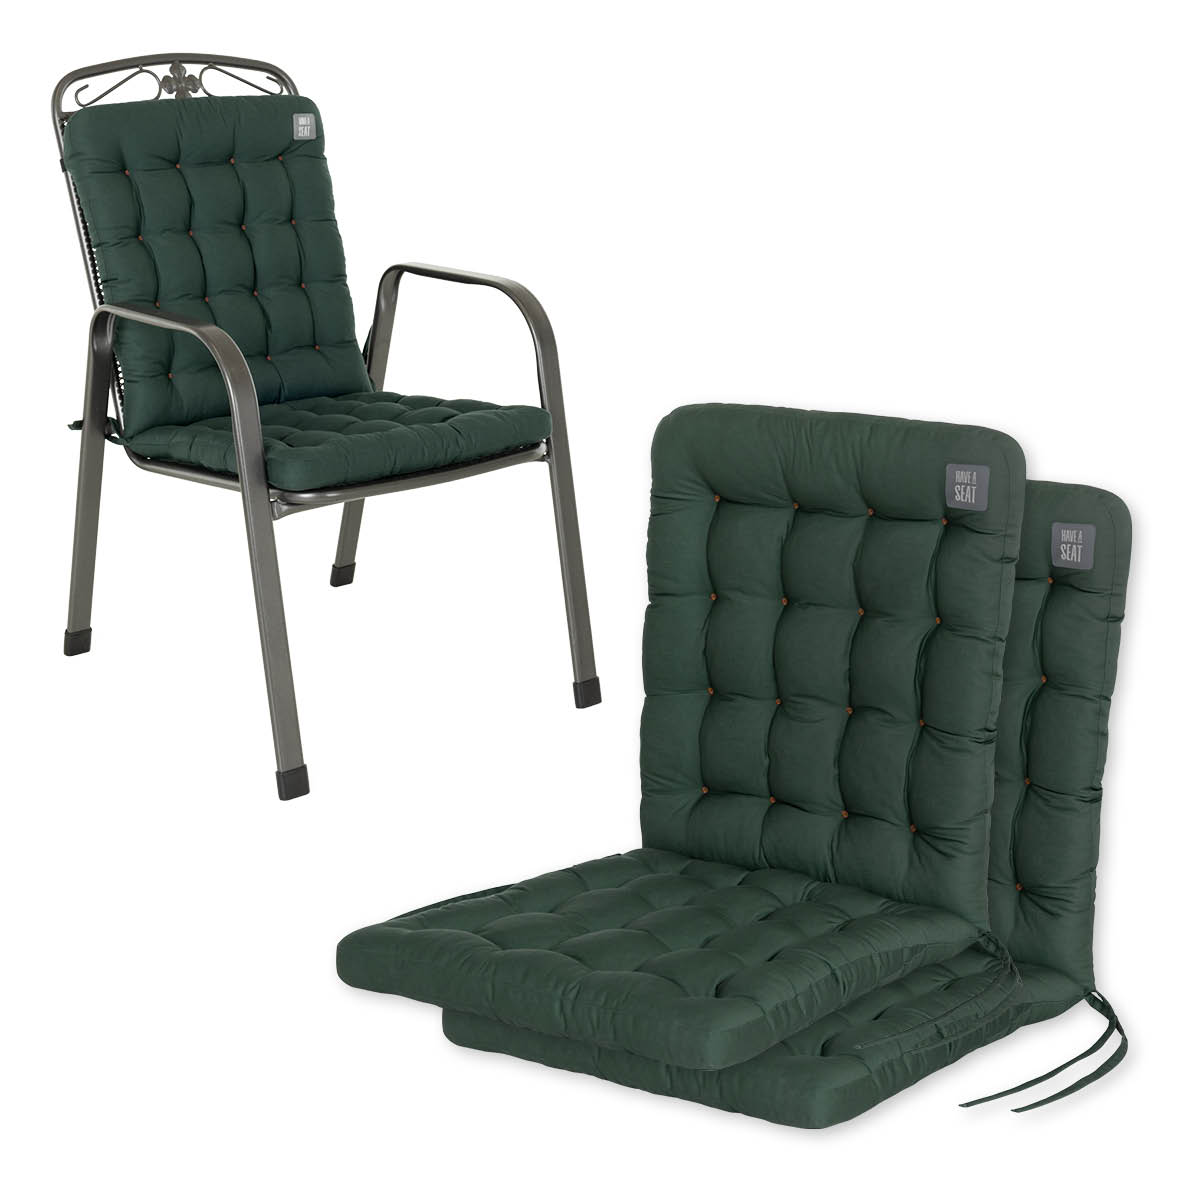 Cuscino per sedia con schienale basso 100x48 cm | Verde muschio | Set da 2 %